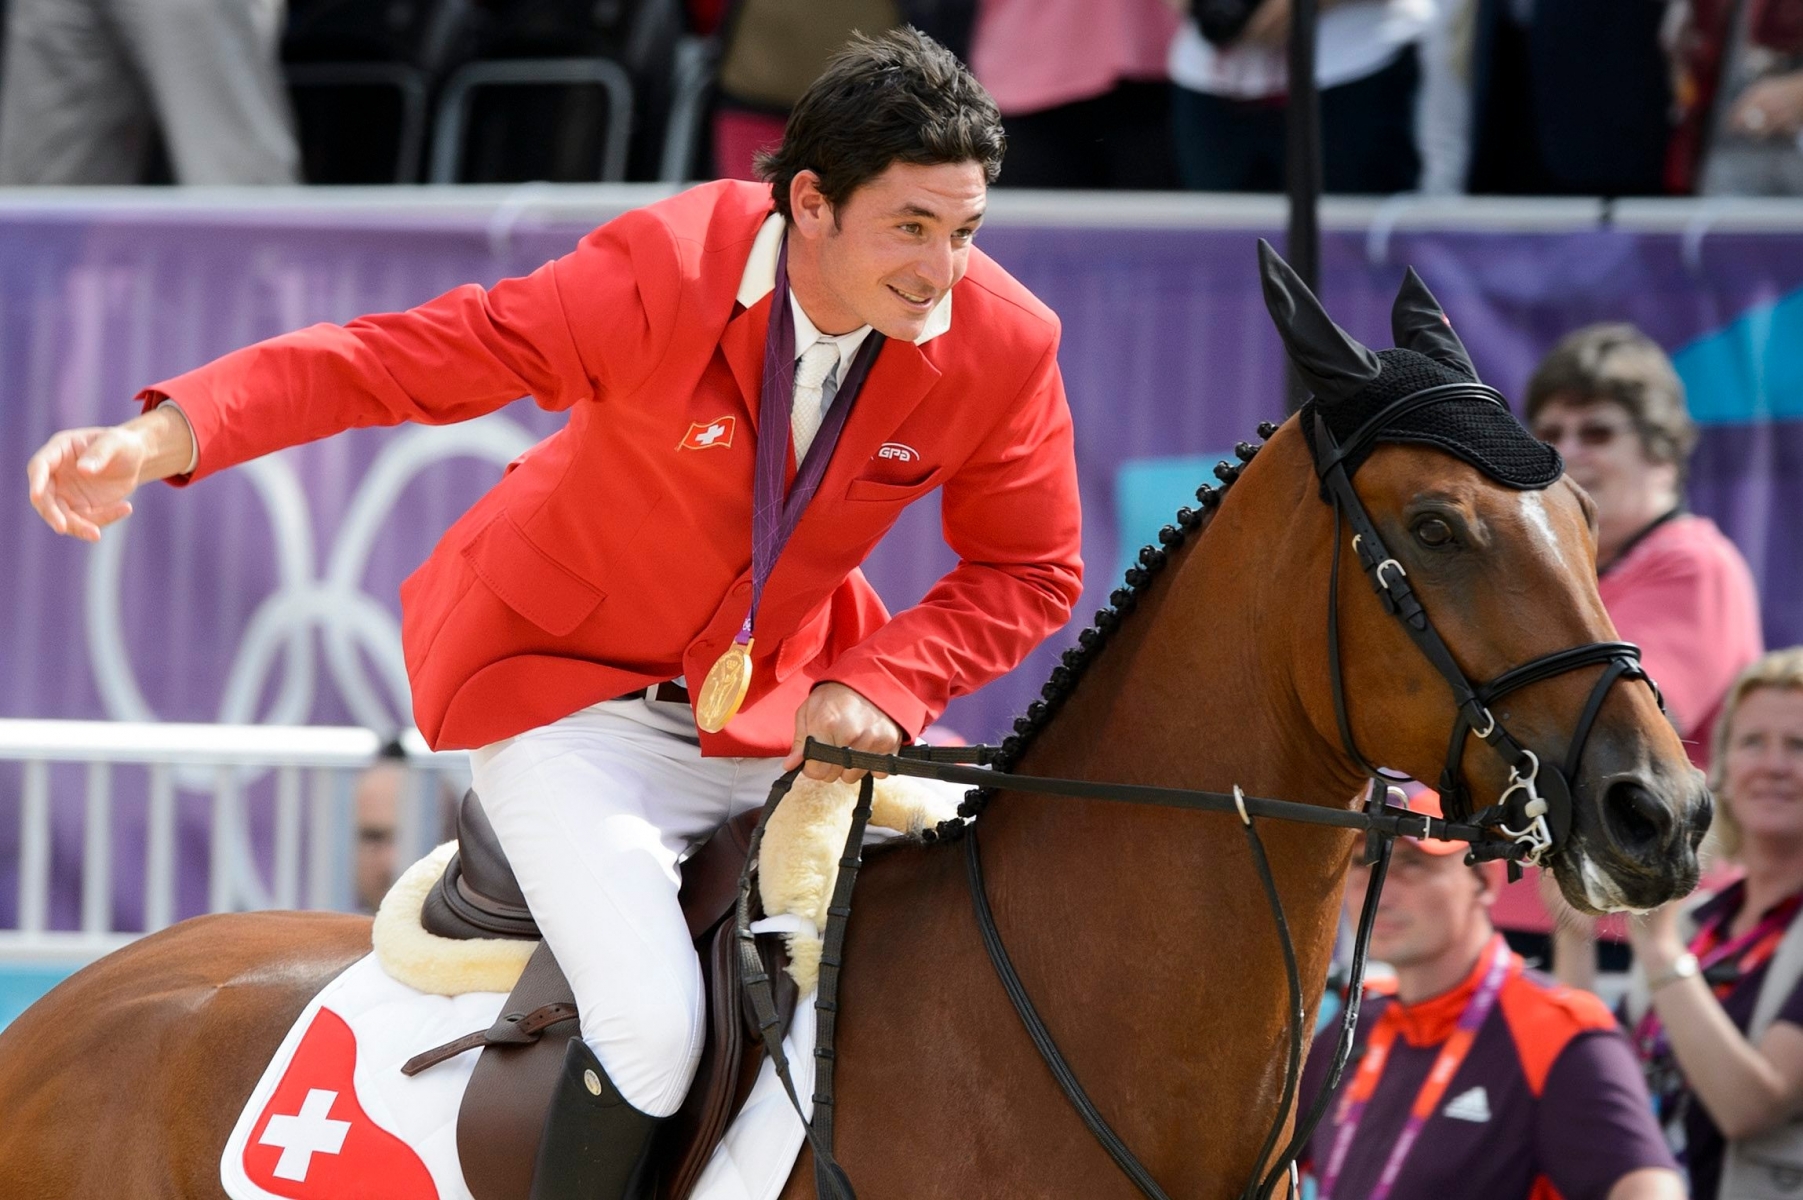 ALS VORSCHAU ZU DEN OLYMPISCHEN SOMMERSPIELEN IN RIO VOM 5. BIS 21. AUGUST 2016 STELLEN WIR IHNEN EINE AUSWAHL AN SCHWEIZER GOLDMEDAILLENGEWINNERN ZUR VERFUEGUNG - Gold medalist Switzerland's Steve Guerdat and his horse Nino des Buissonnets celebrate after winning the Individual Jumping finals in the Greenwich Park in London, Britain, at the London 2012 Olympic Summer Games, pictured on Wednesday, August 8, 2012. (KEYSTONE/Laurent Gillieron) BRASILIEN OLYMPIA RIO 2016 GOLDMEDAILLENGEWINNER